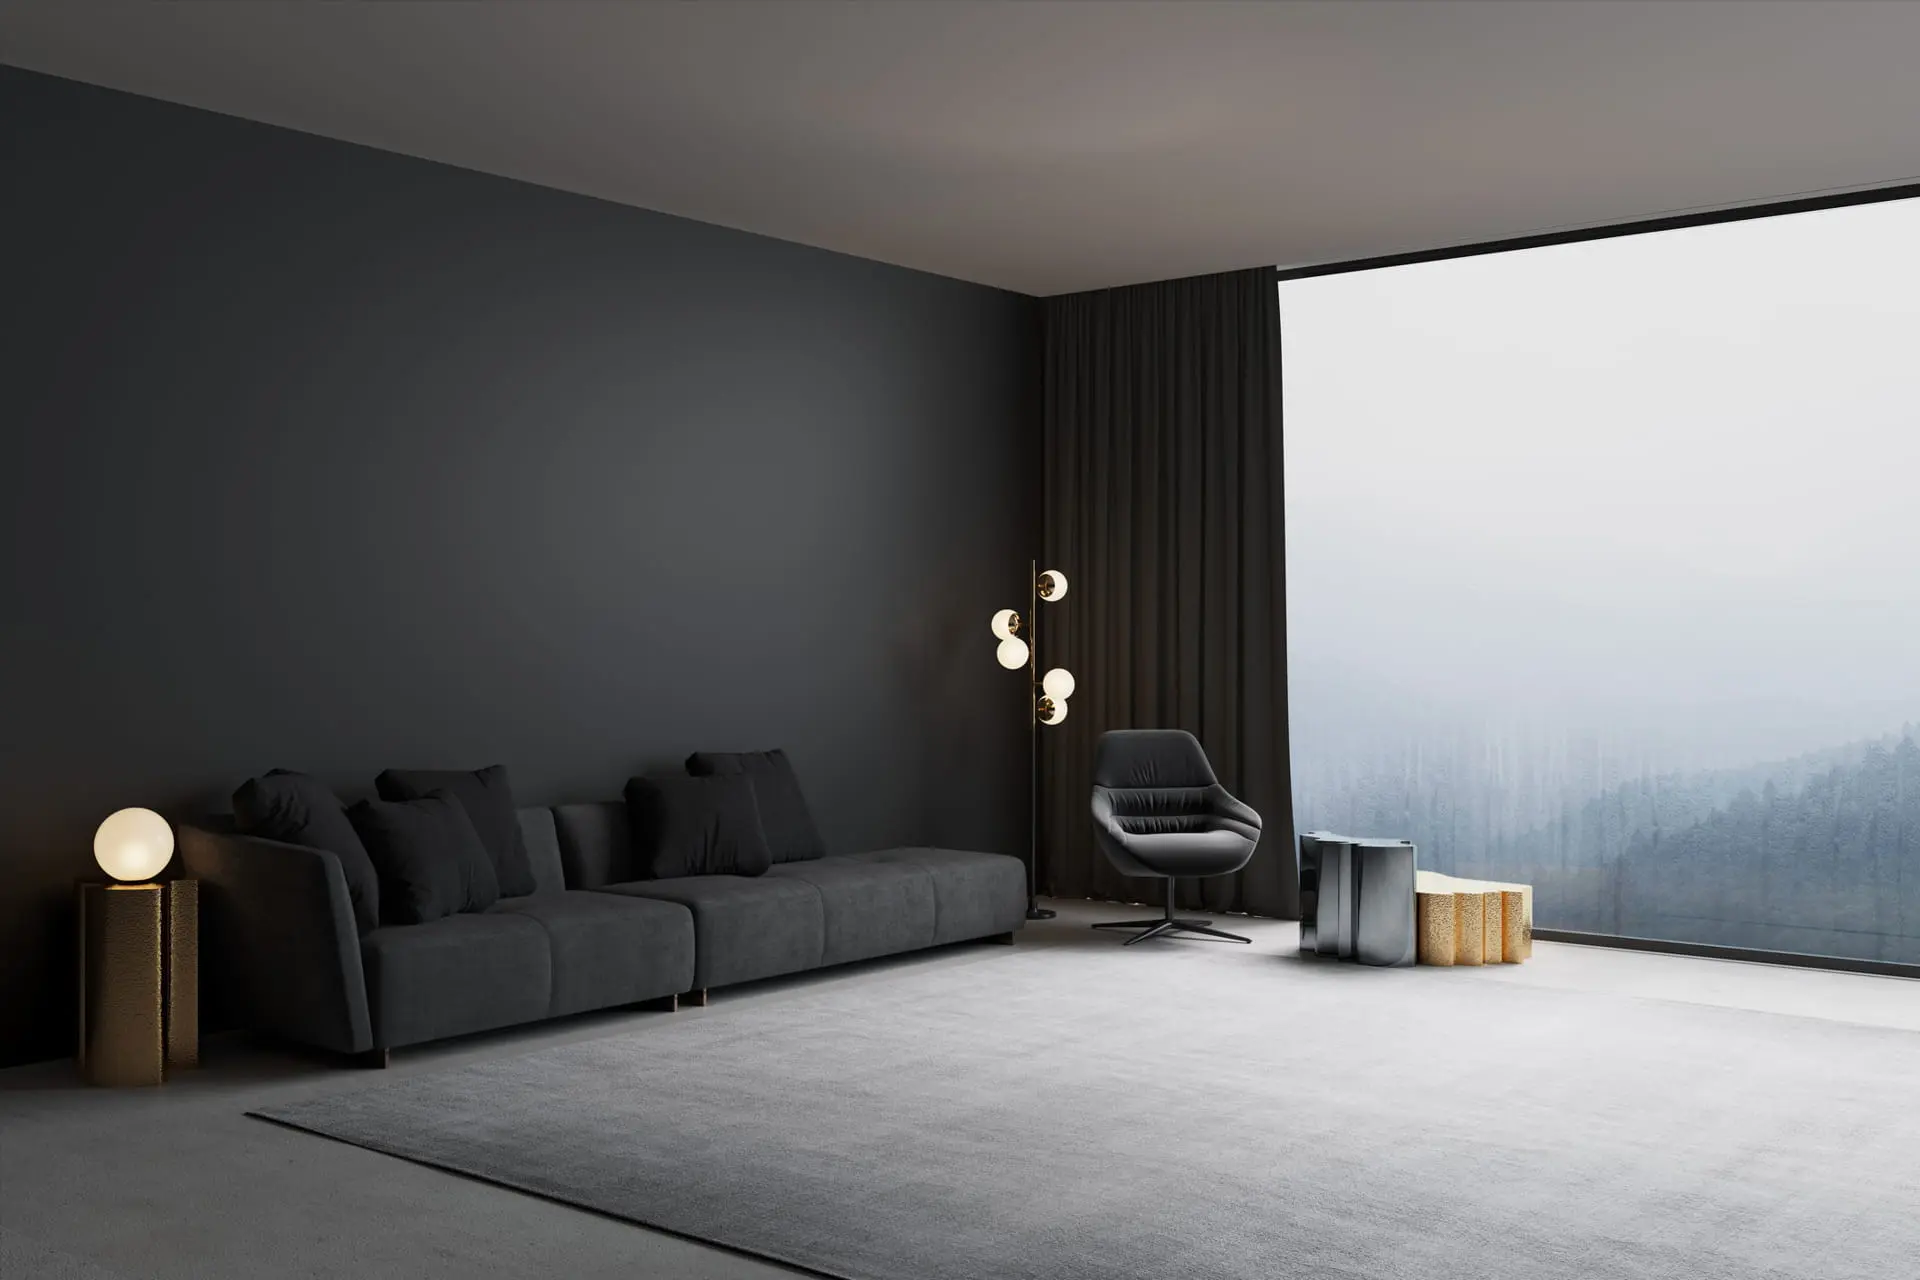 Salotto moderno decorato con microcemento in colore scuro